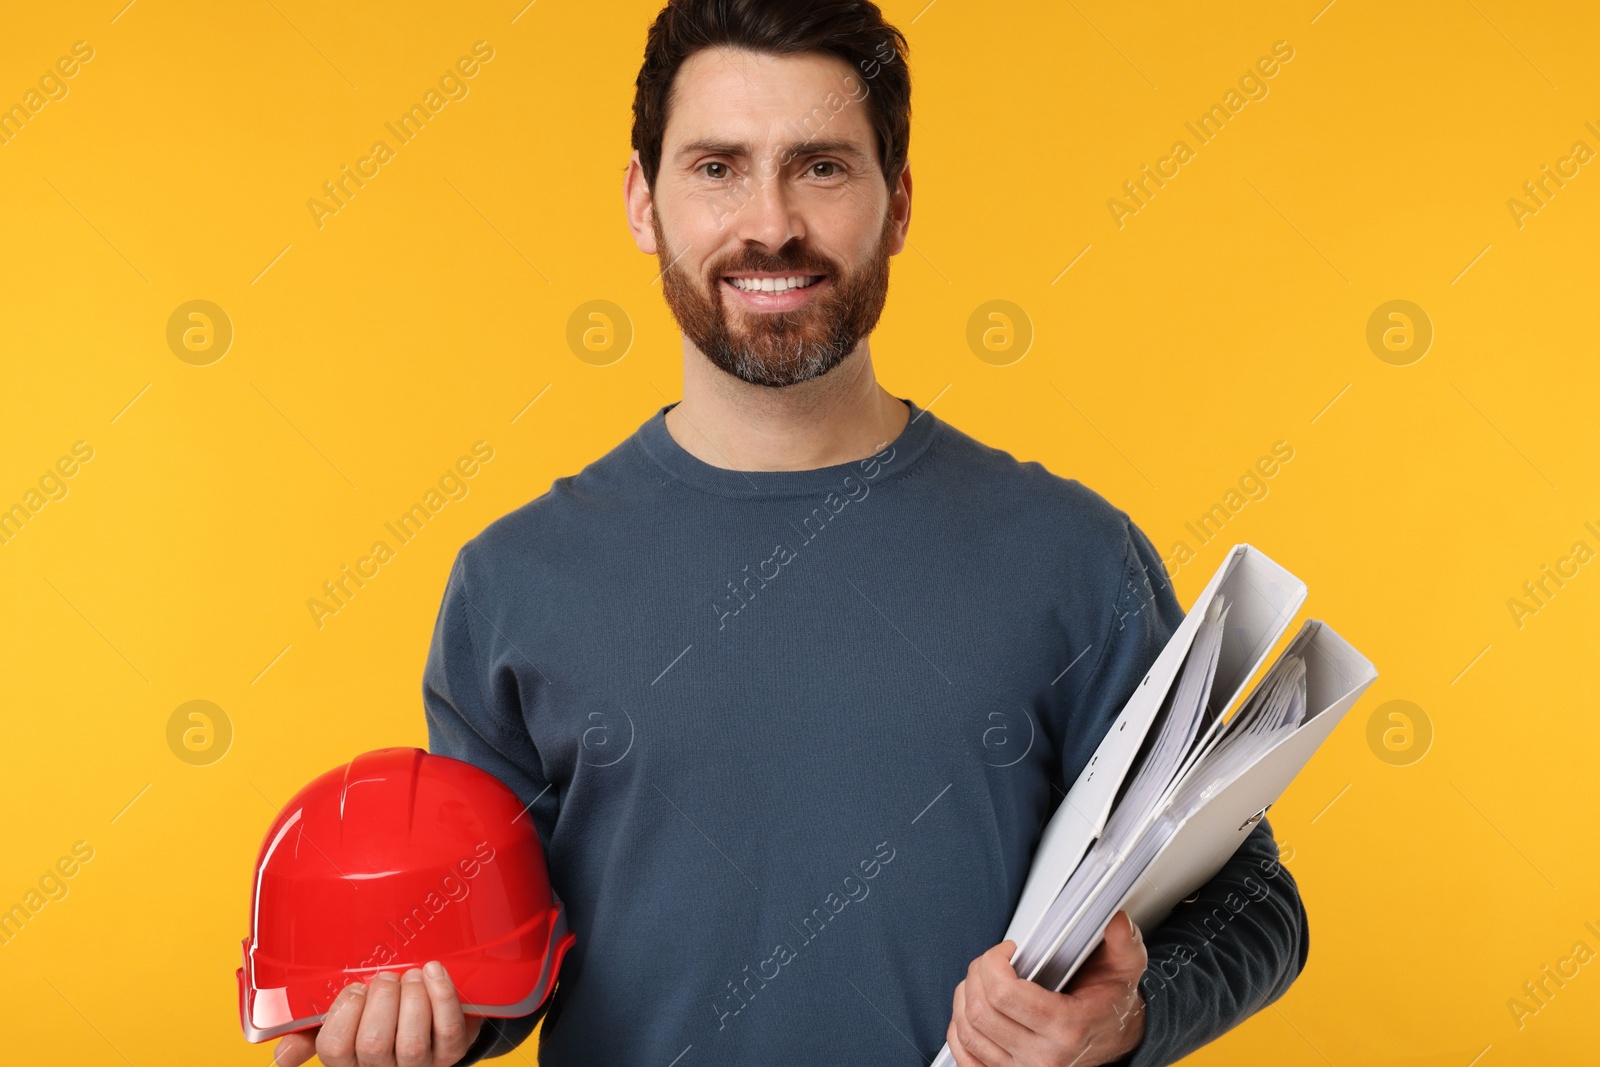 Photo of Architect with hard hat and folders on orange background